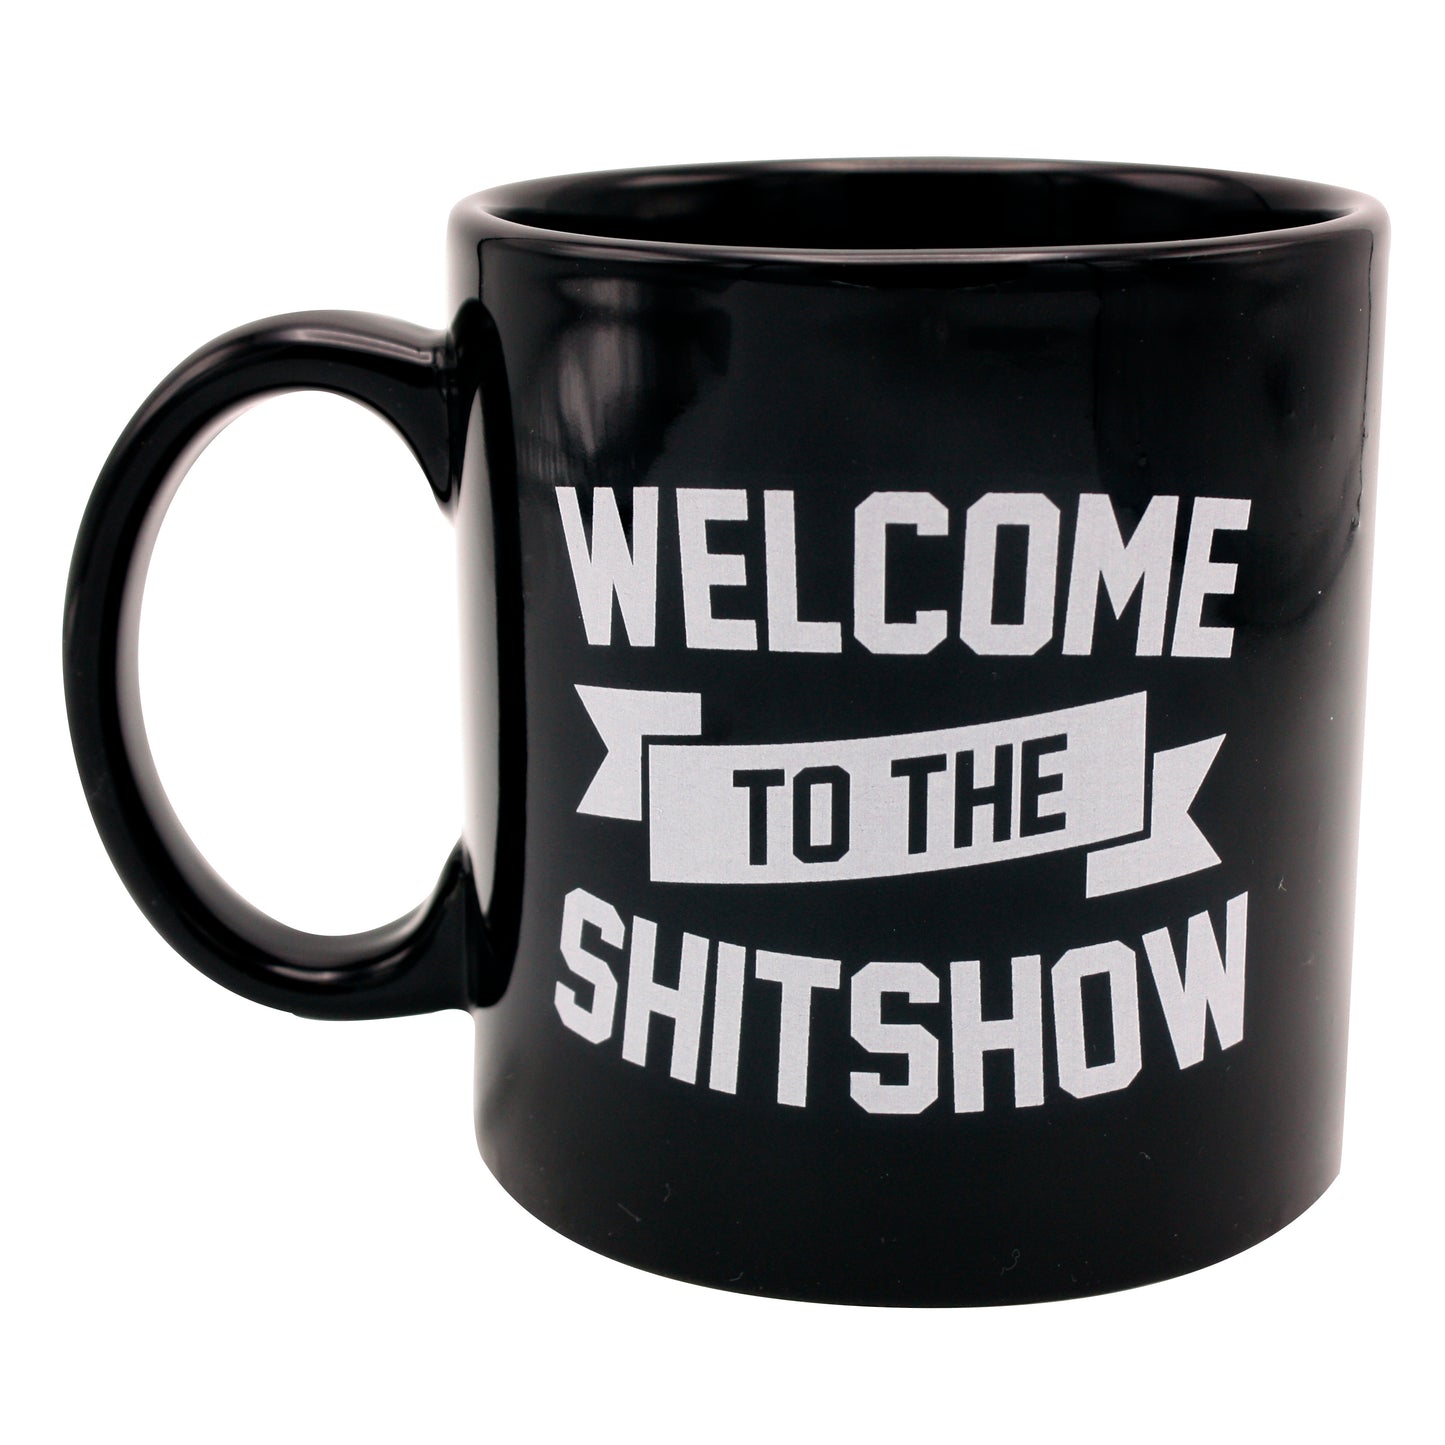 Giant Shit Show Mug